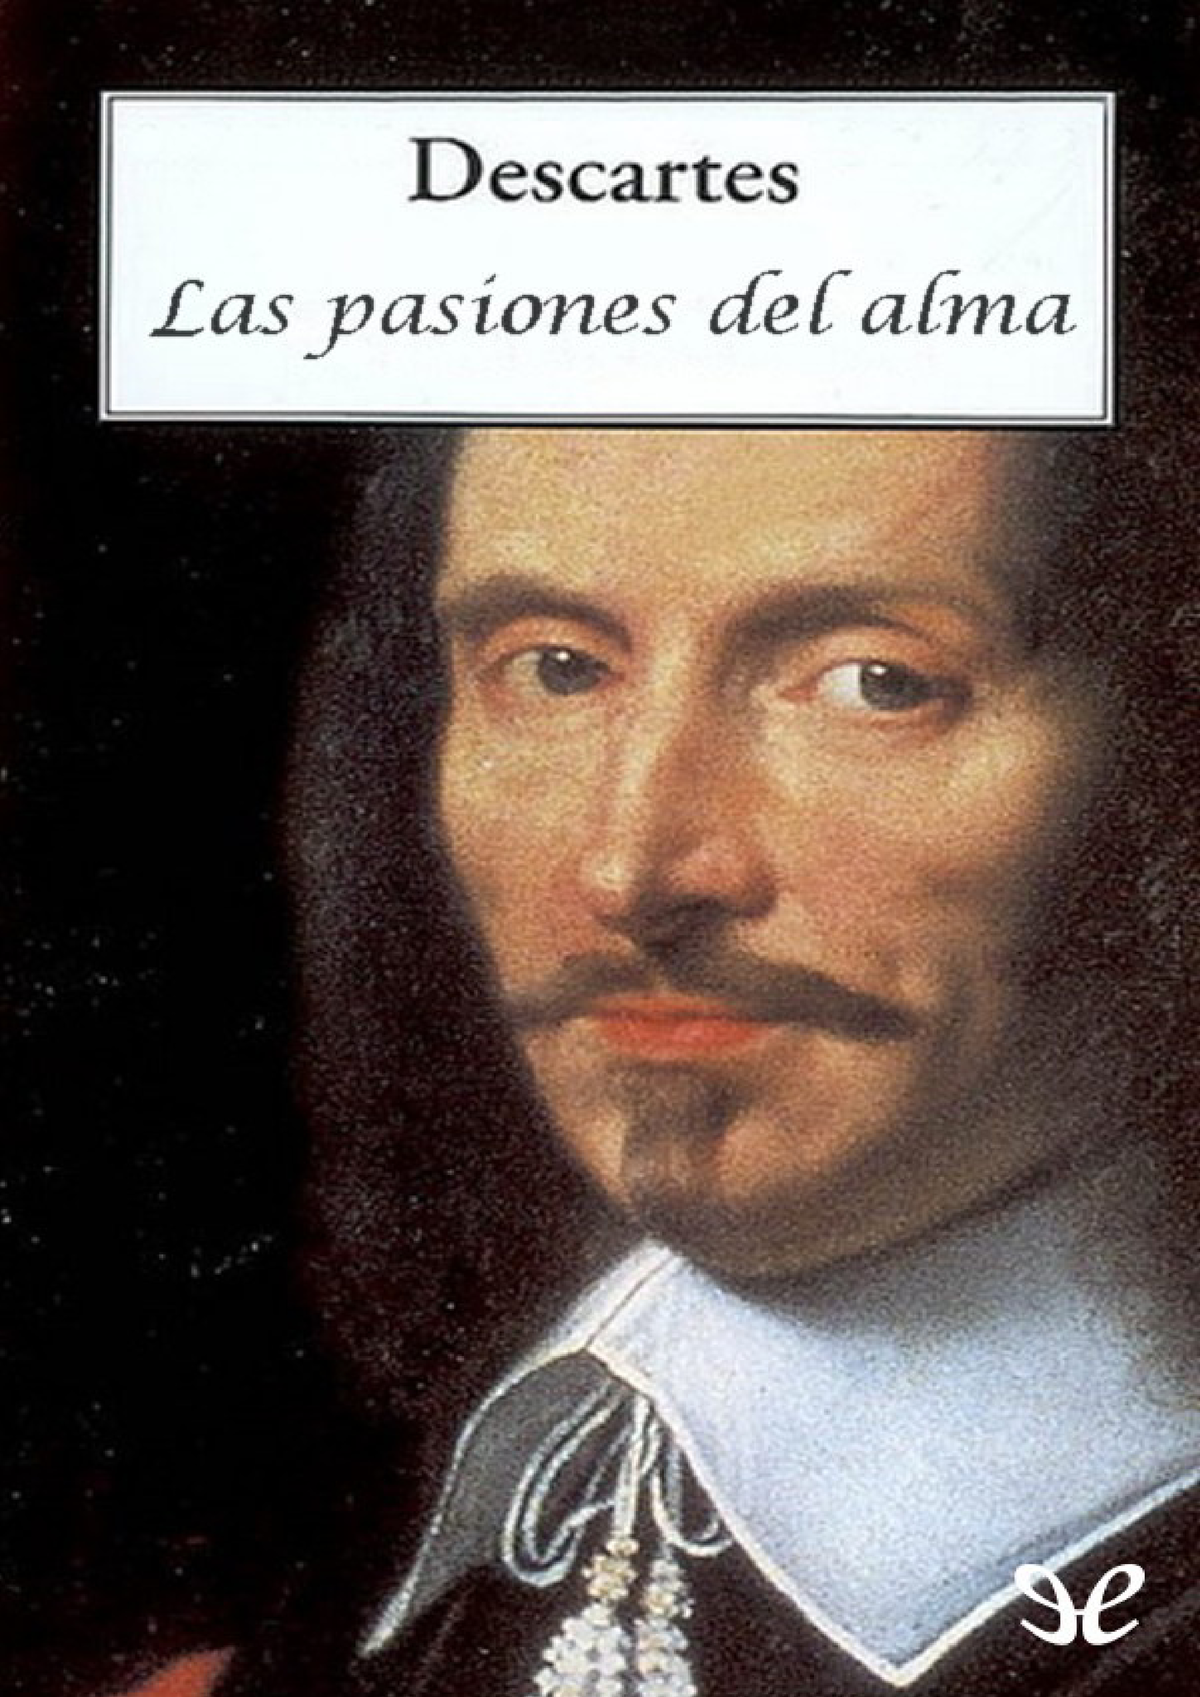 Descartes Las pasiones del alma - Fruto de toda biografía ha el pensamiento como - Studocu